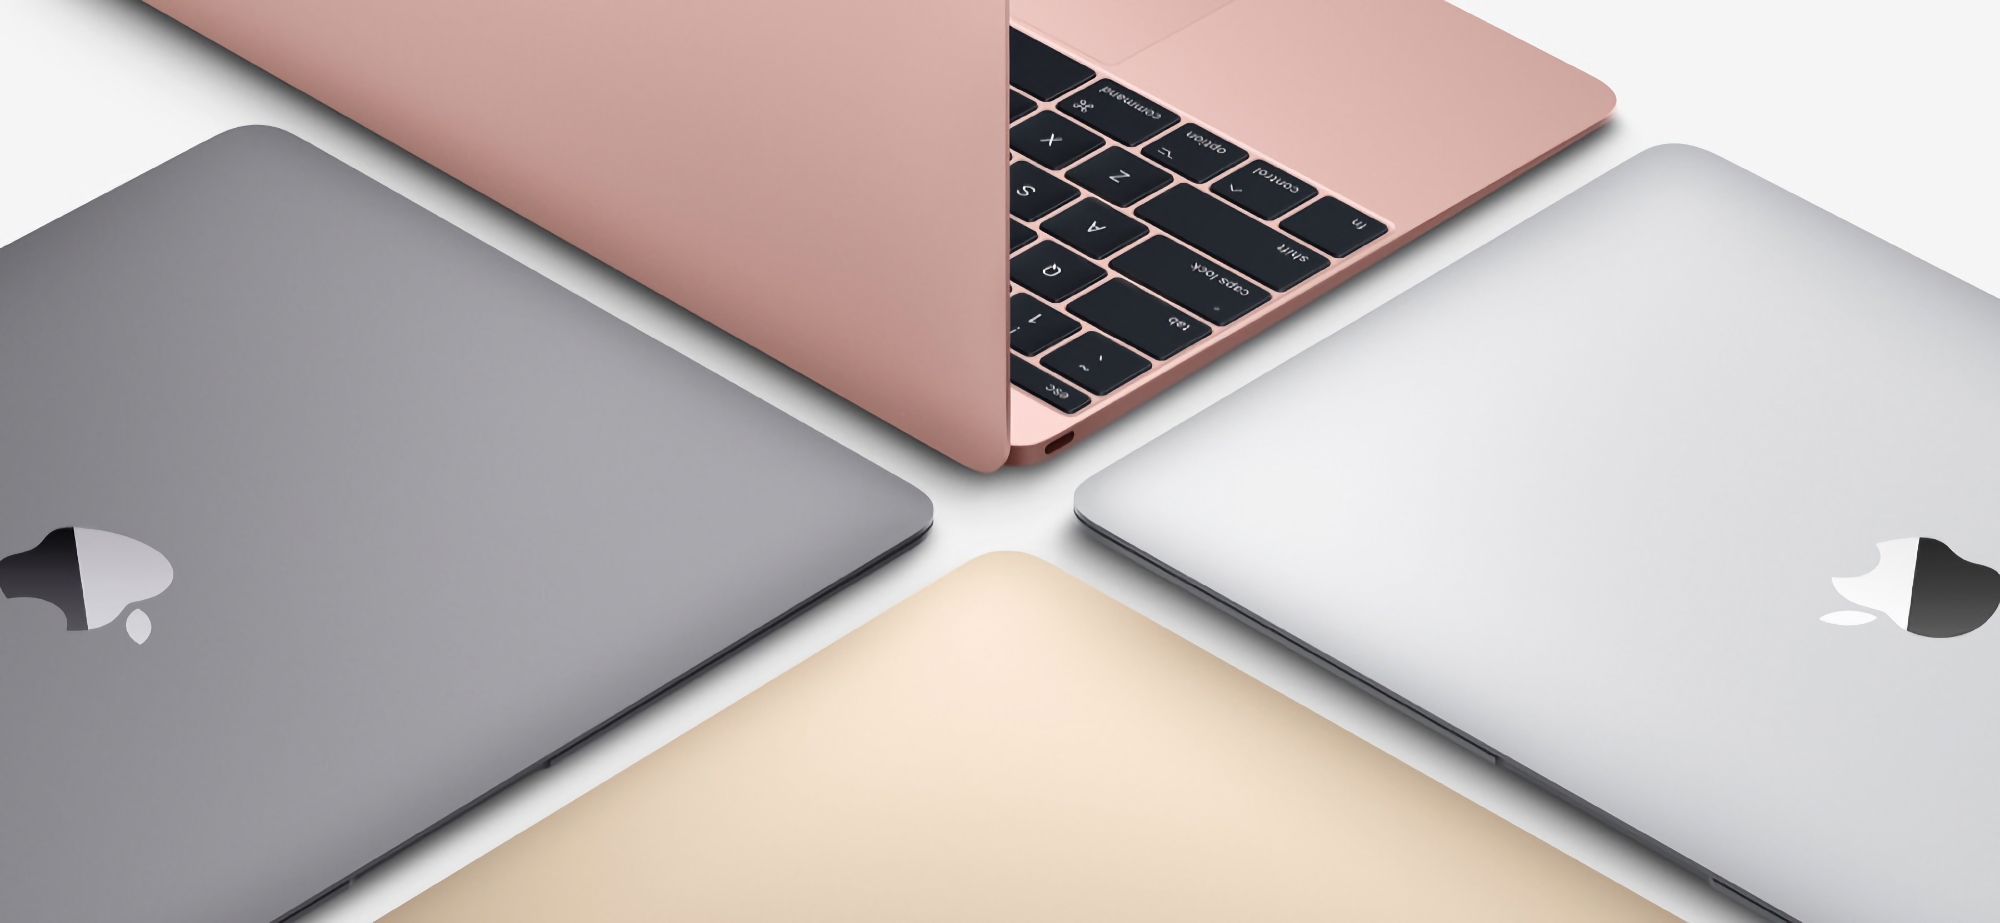 Det går rykter: Apple jobber med en budsjett-MacBook, nyheten vil komme på markedet i to versjoner og vil koste rundt 700 dollar